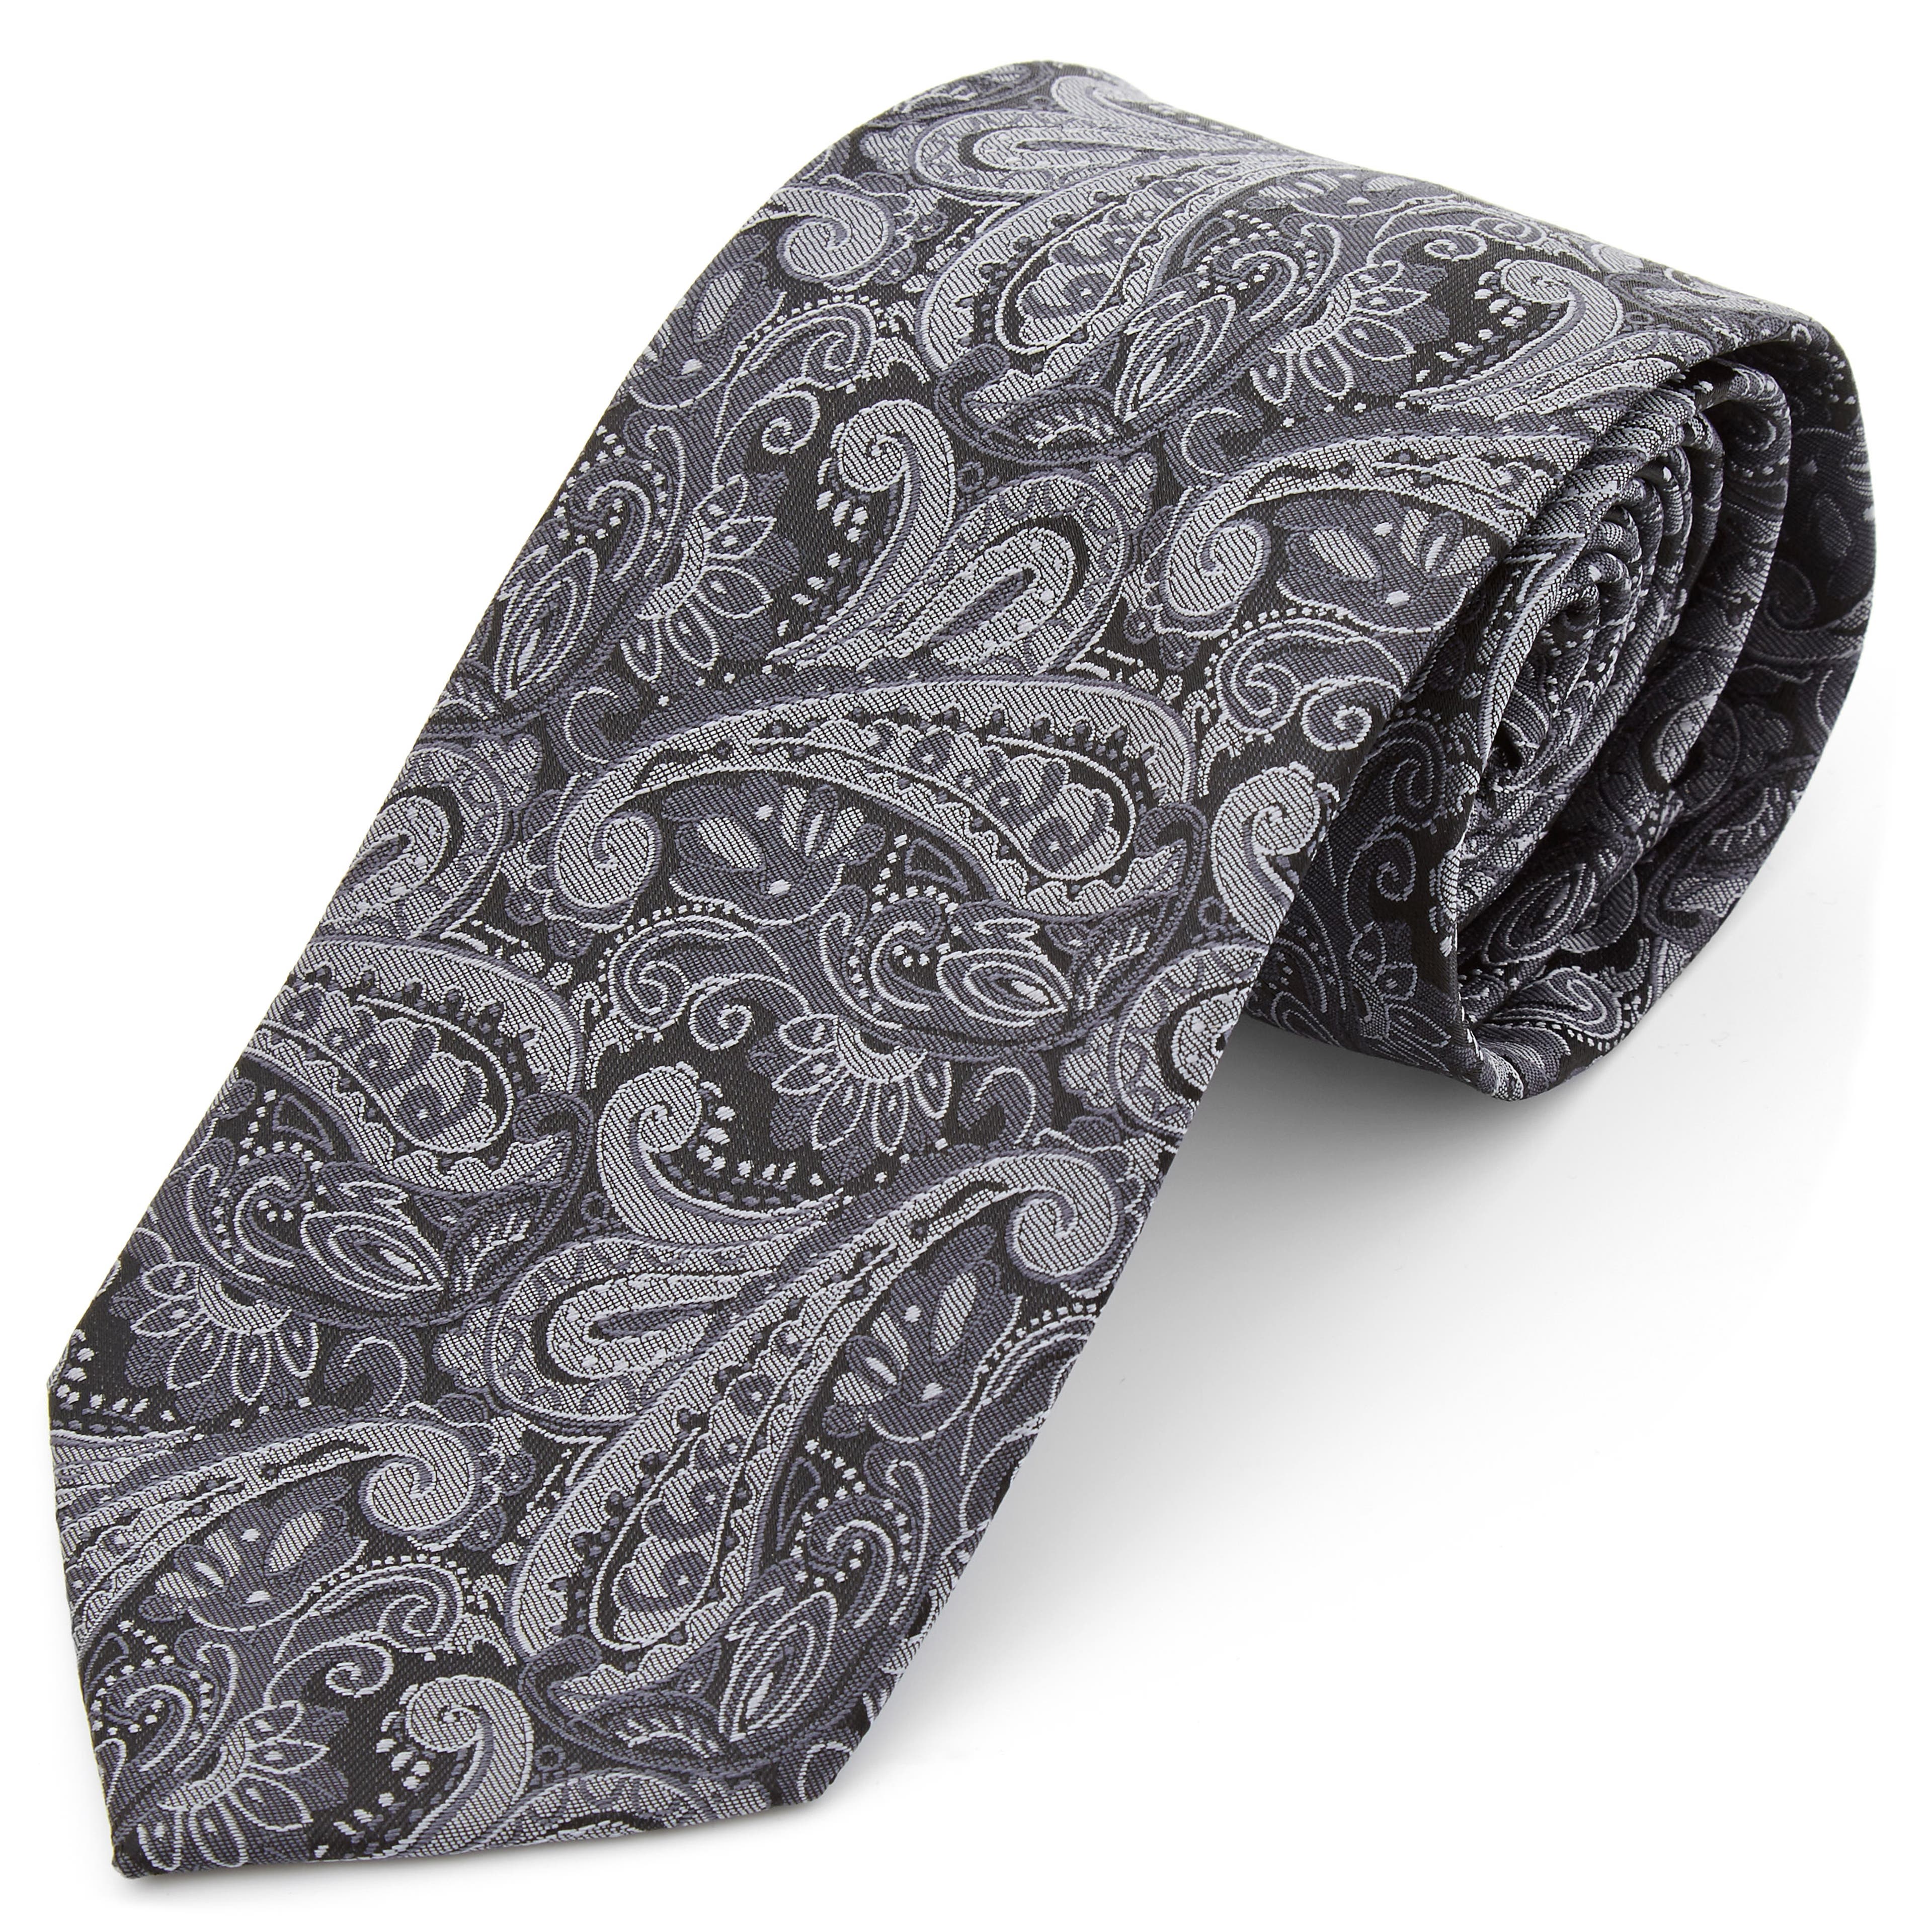 Cravate gris argent à motif cachemire - large 